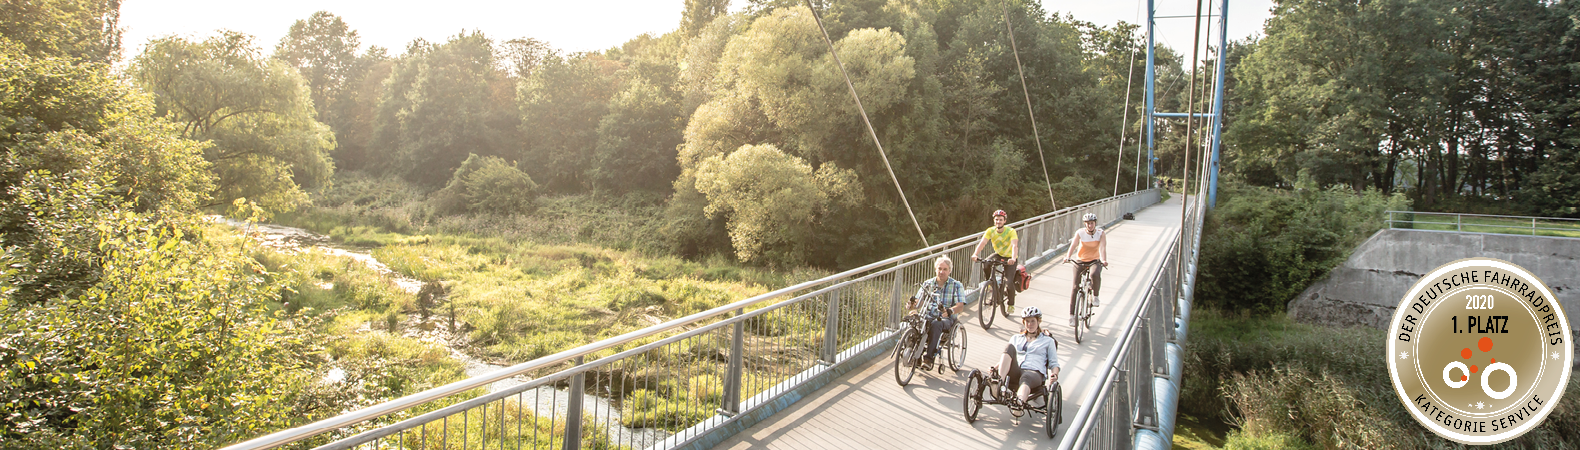 Radfahrer und Handbiker auf der Römer-Lippe-Route am Stausee in Haltern am See